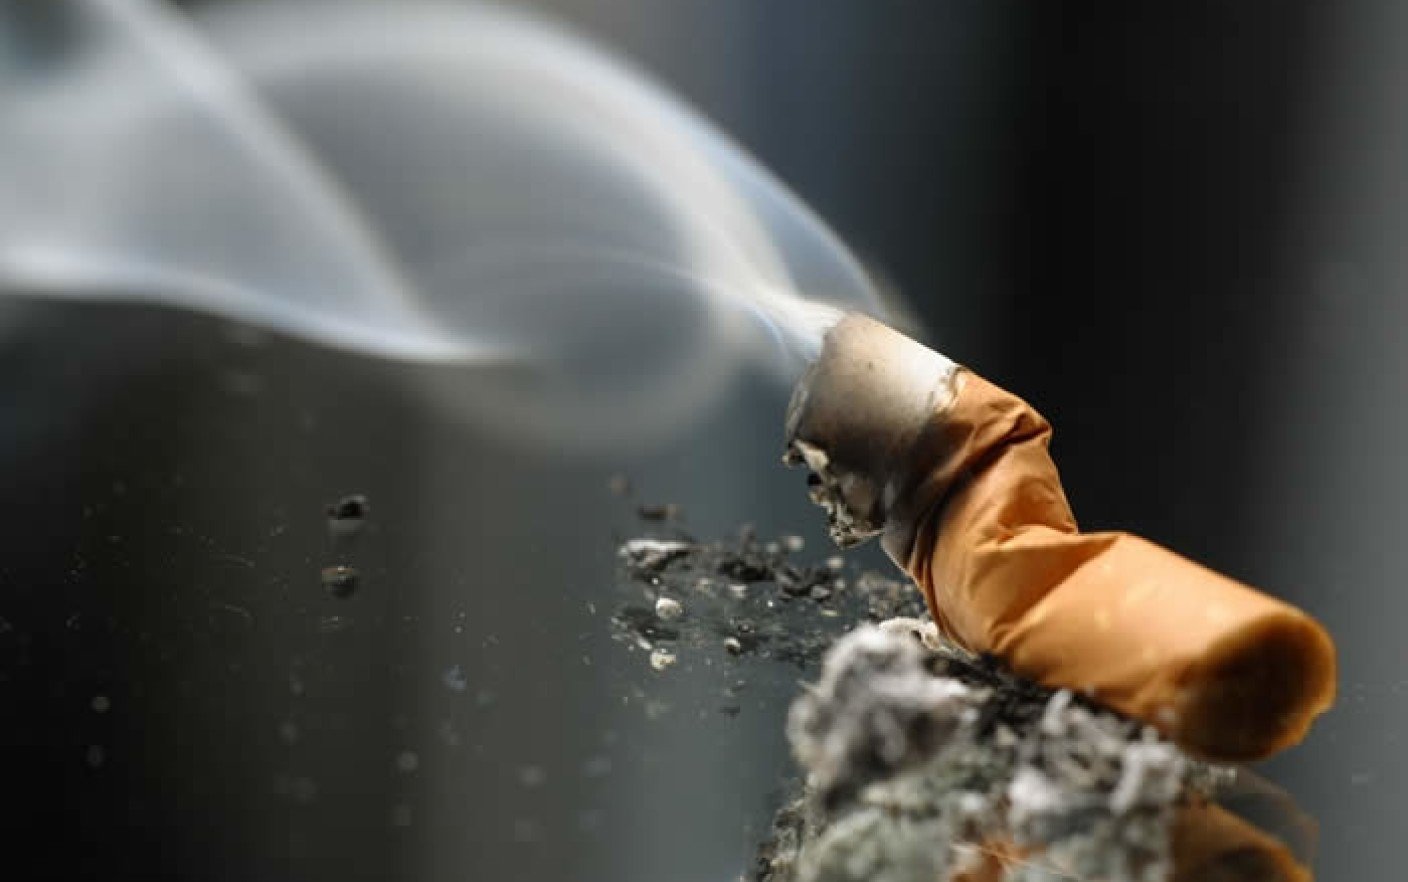  O fostă asistentă medicală era să ardă de vie: a scăpat ţigara din gură